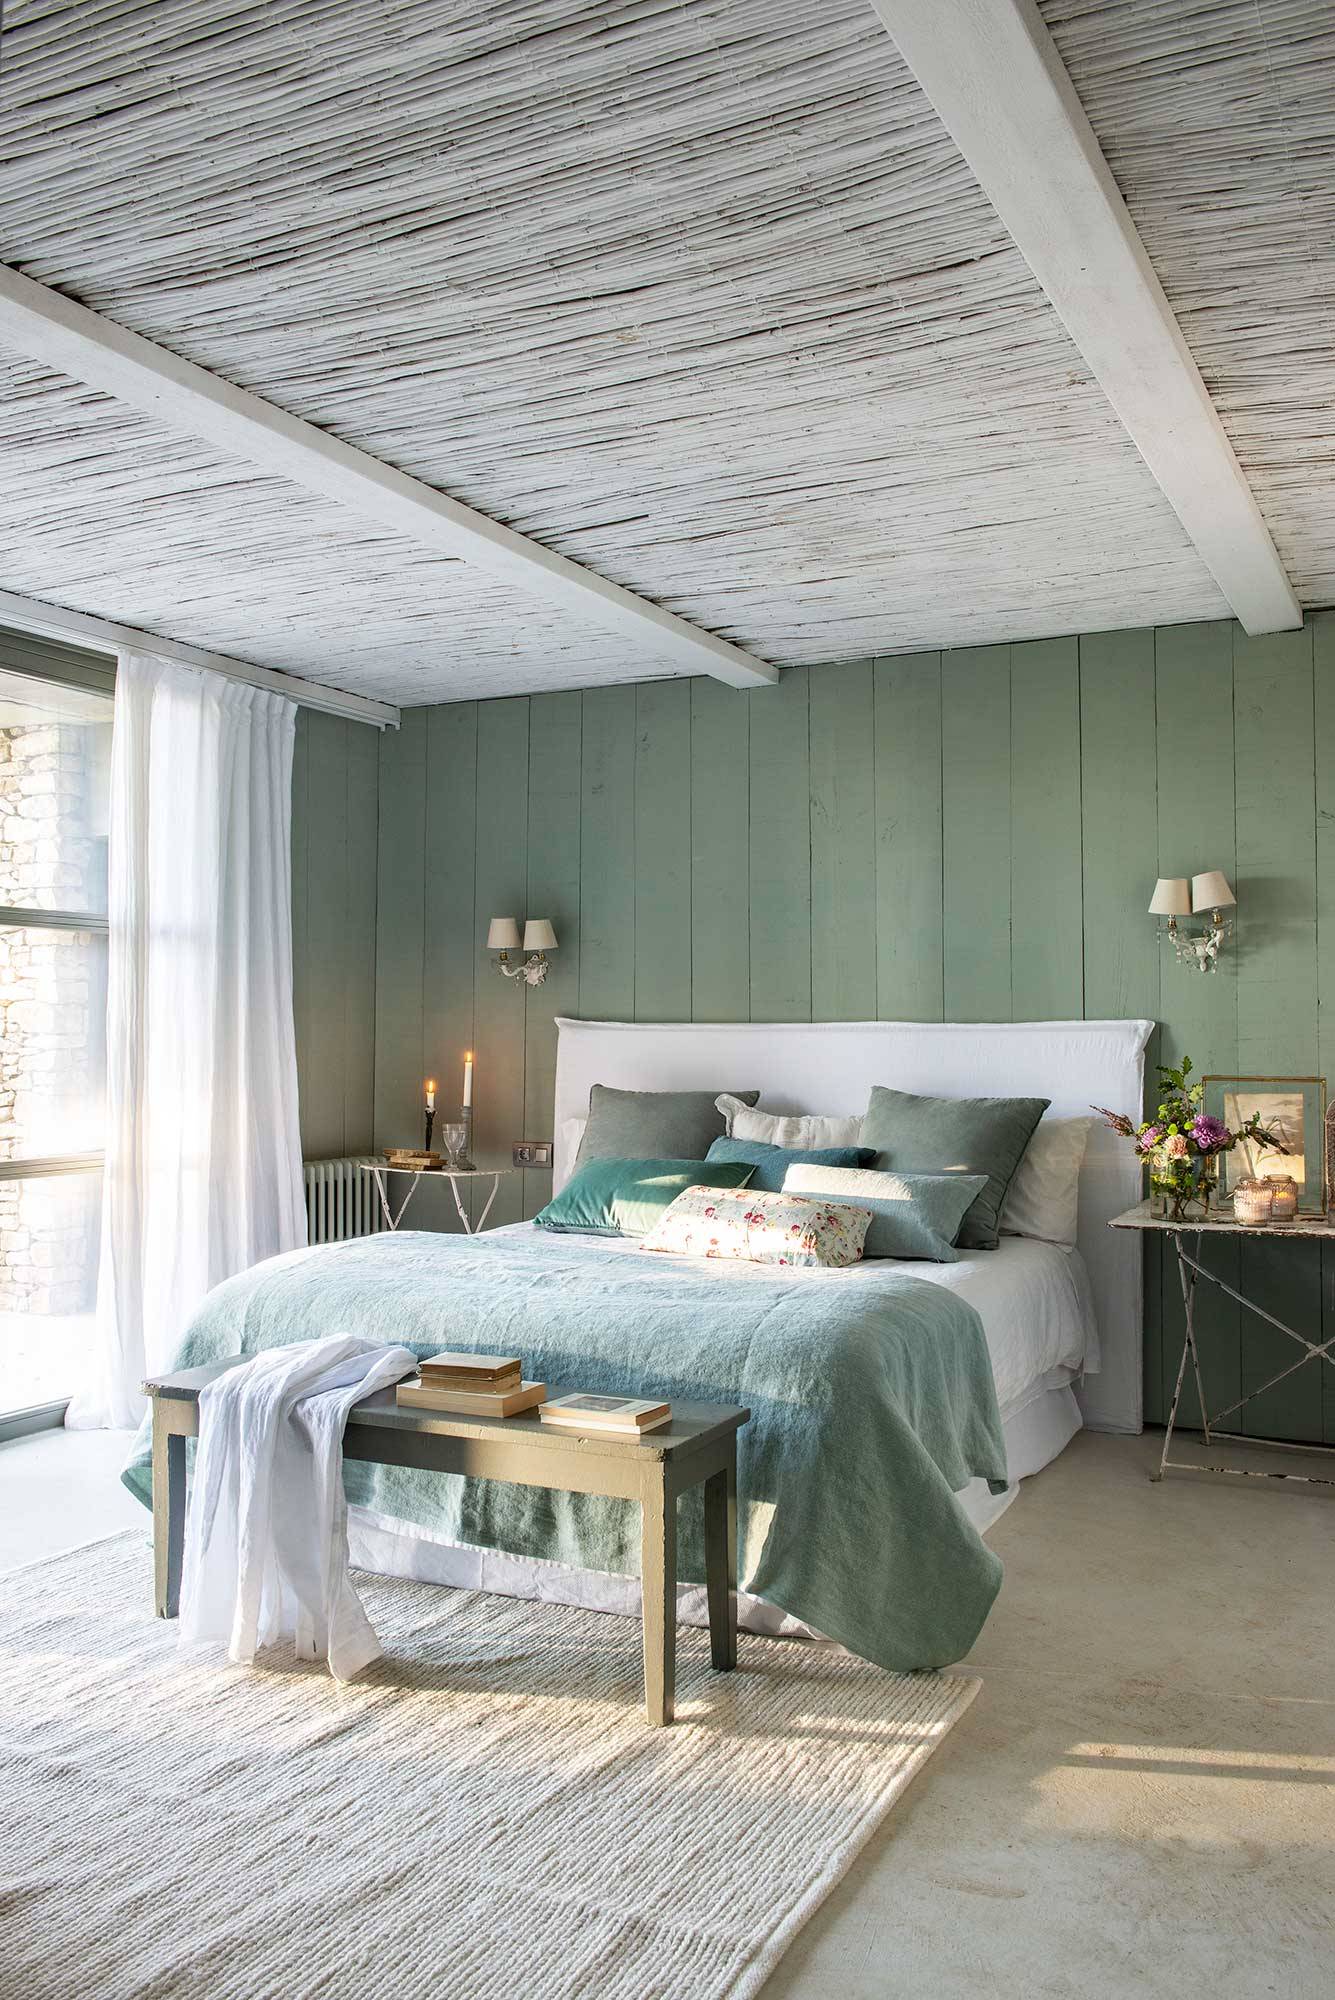 Dormitorio principal con cabecero tapizado y revestimiento de madera pintada.